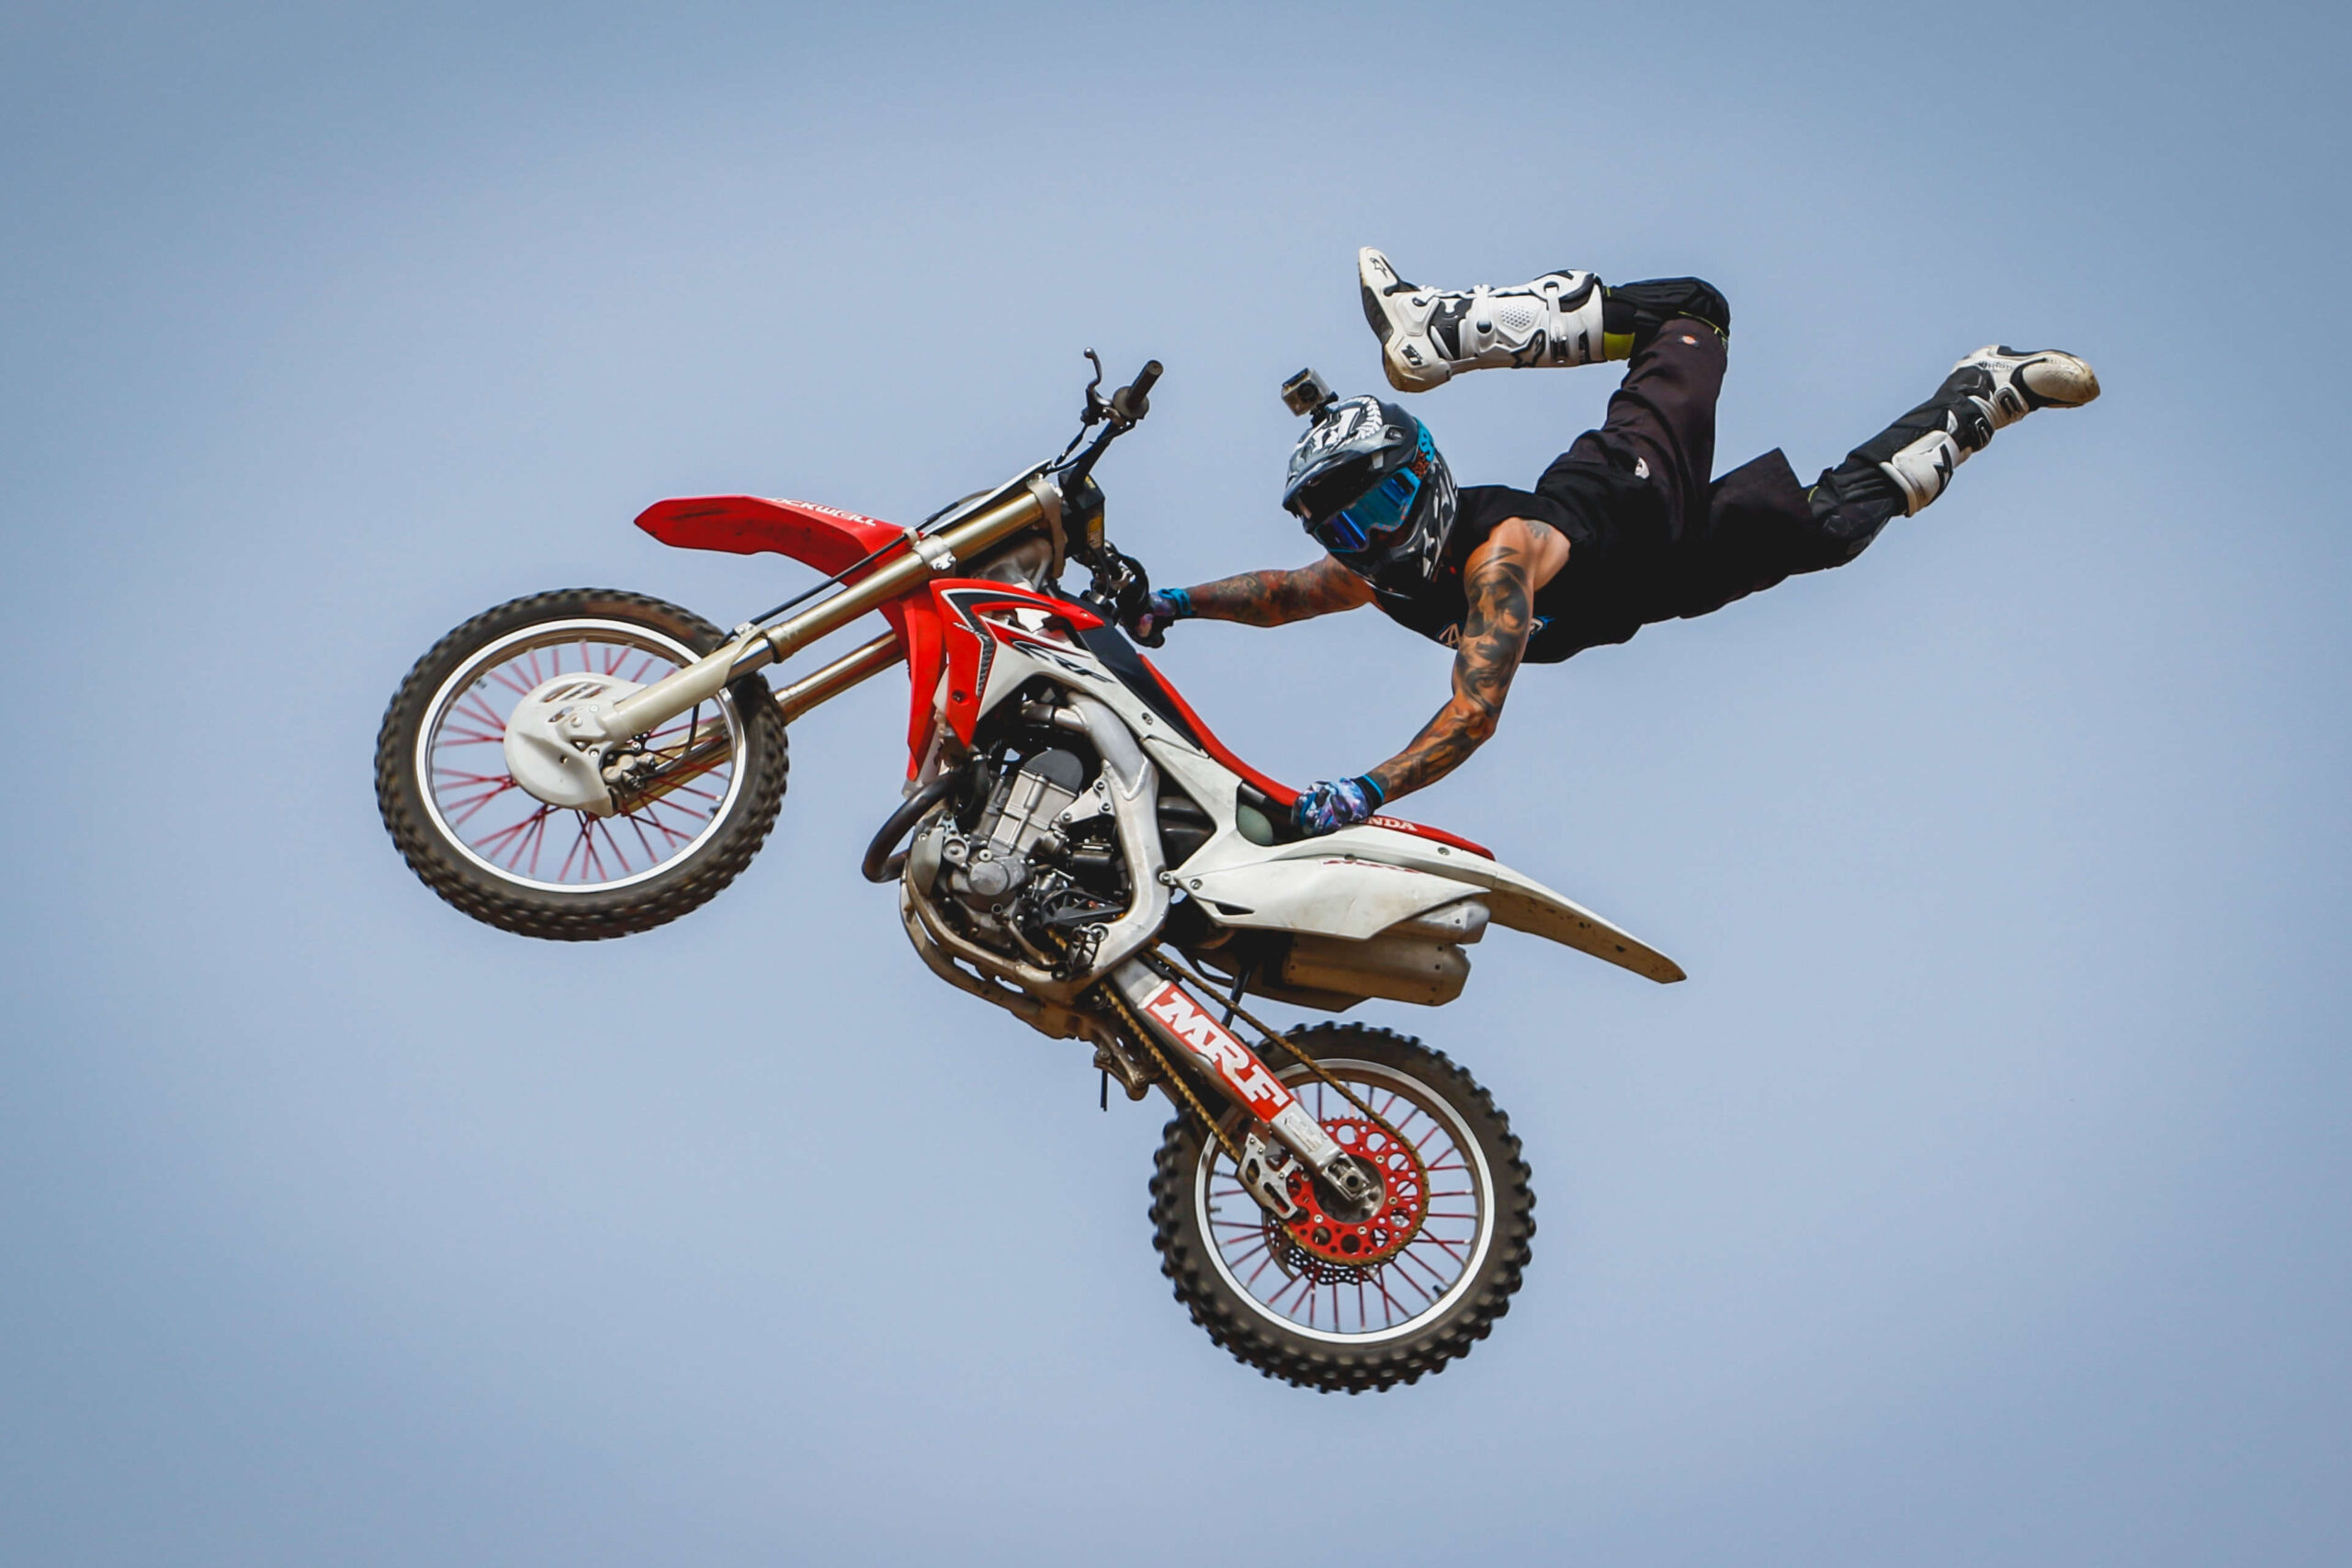 Conheça o Freestyle Motocross, esporte radical com motos